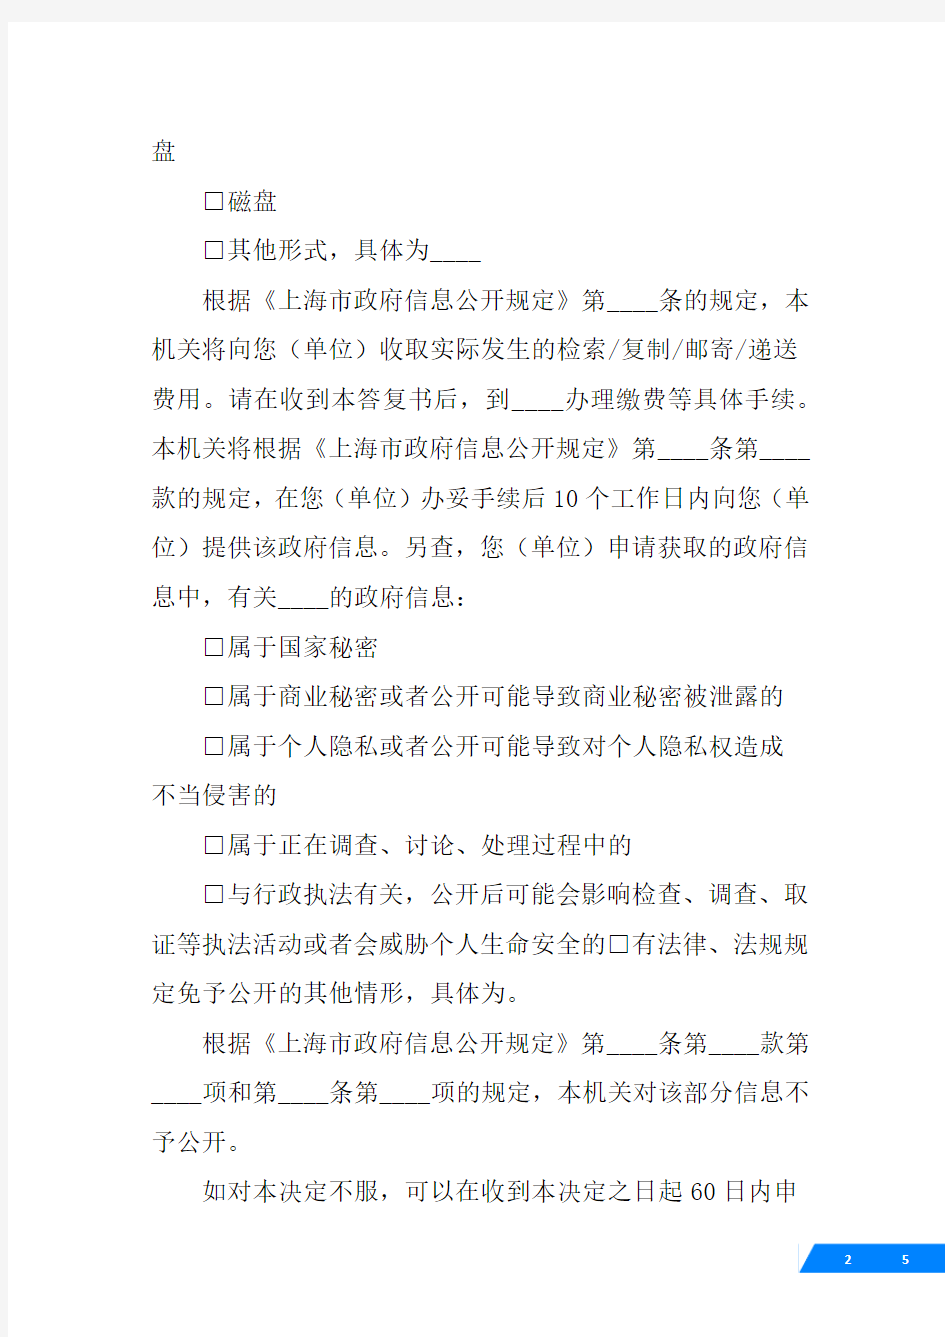 上海市政府行政诉讼